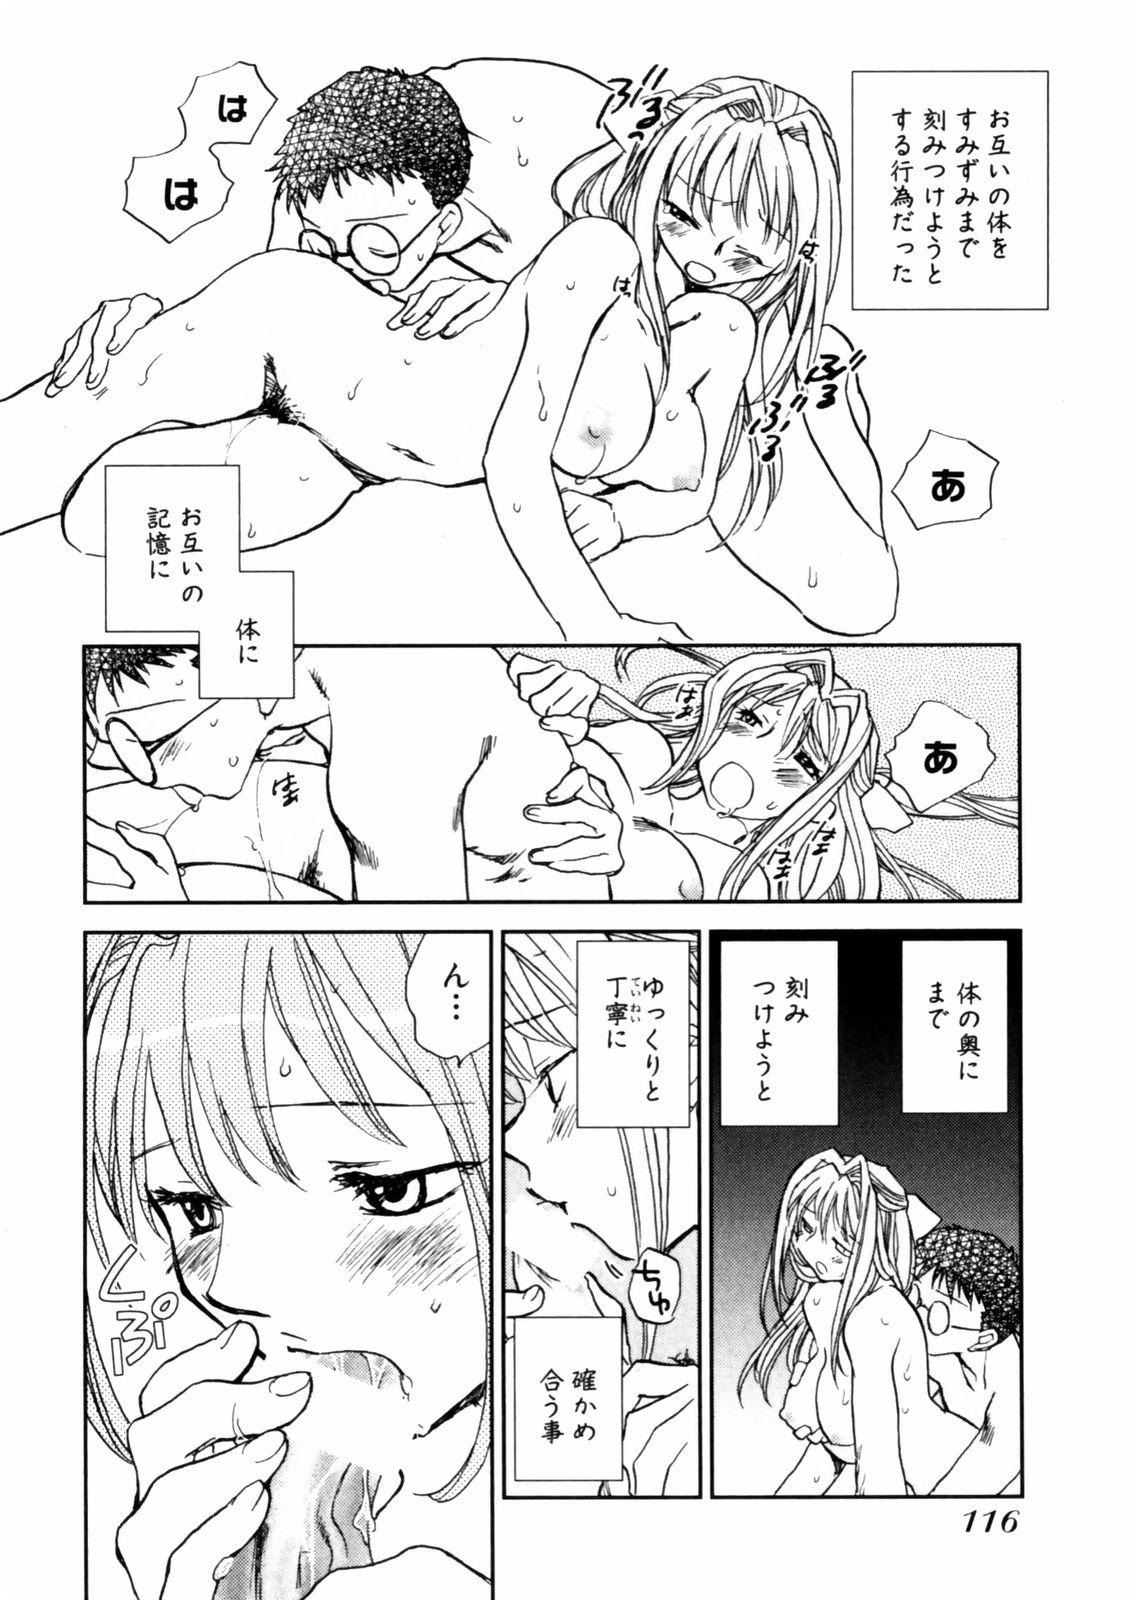 [Okano Ahiru] Hanasake ! Otome Juku (Otome Private Tutoring School) Vol.2 117